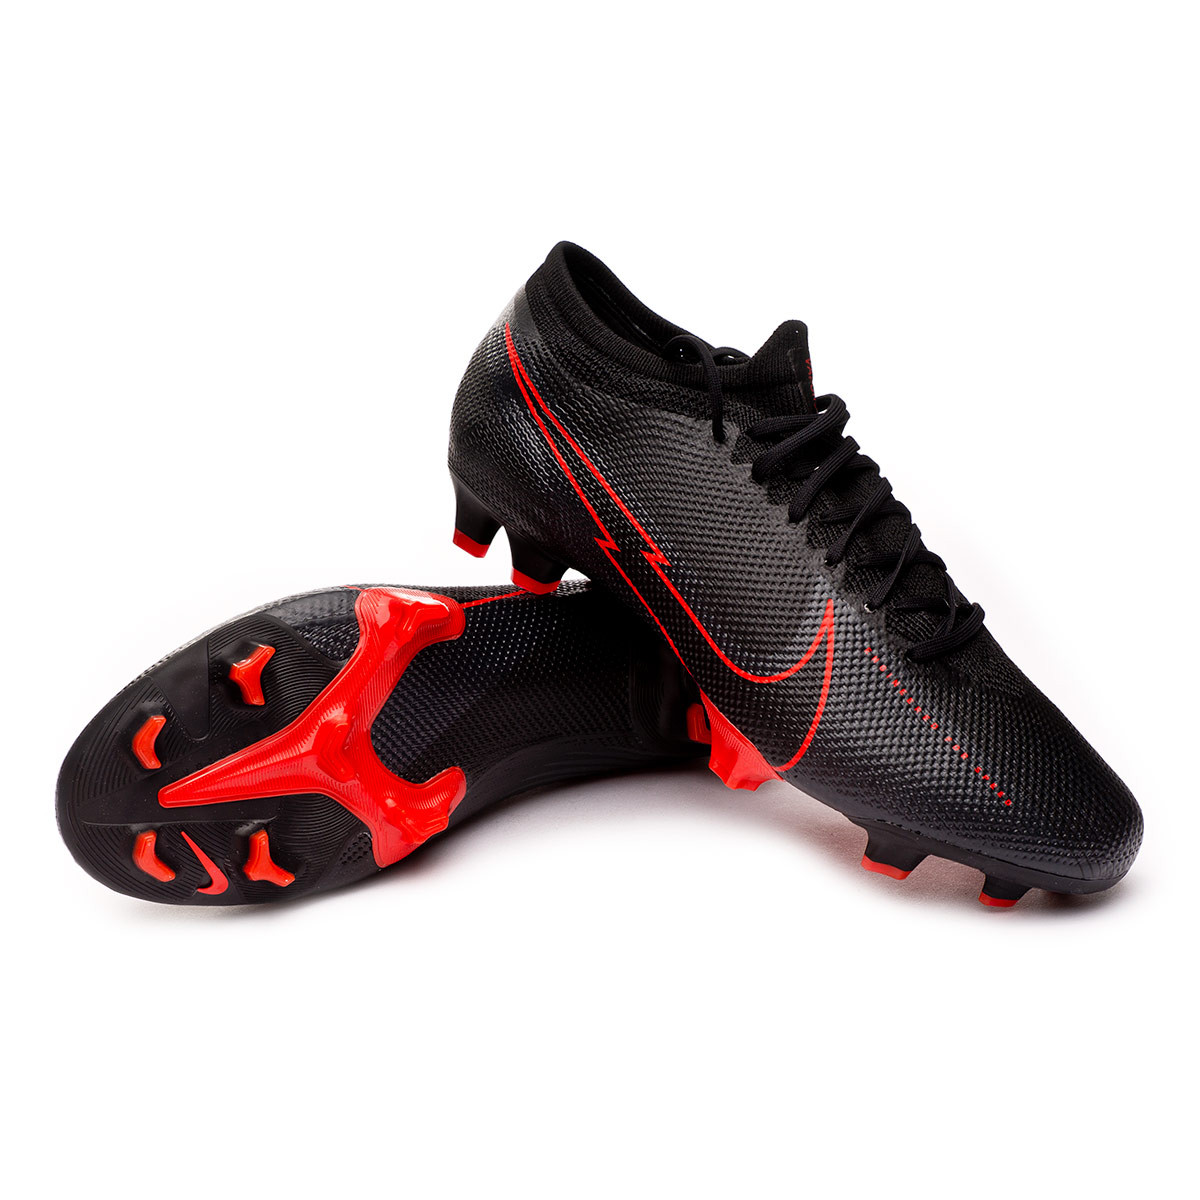 Zapatos de fútbol Nike Mercurial Vapor XIII Pro FG Black-Dark smoke  grey-Chile red - Tienda de fútbol Fútbol Emotion